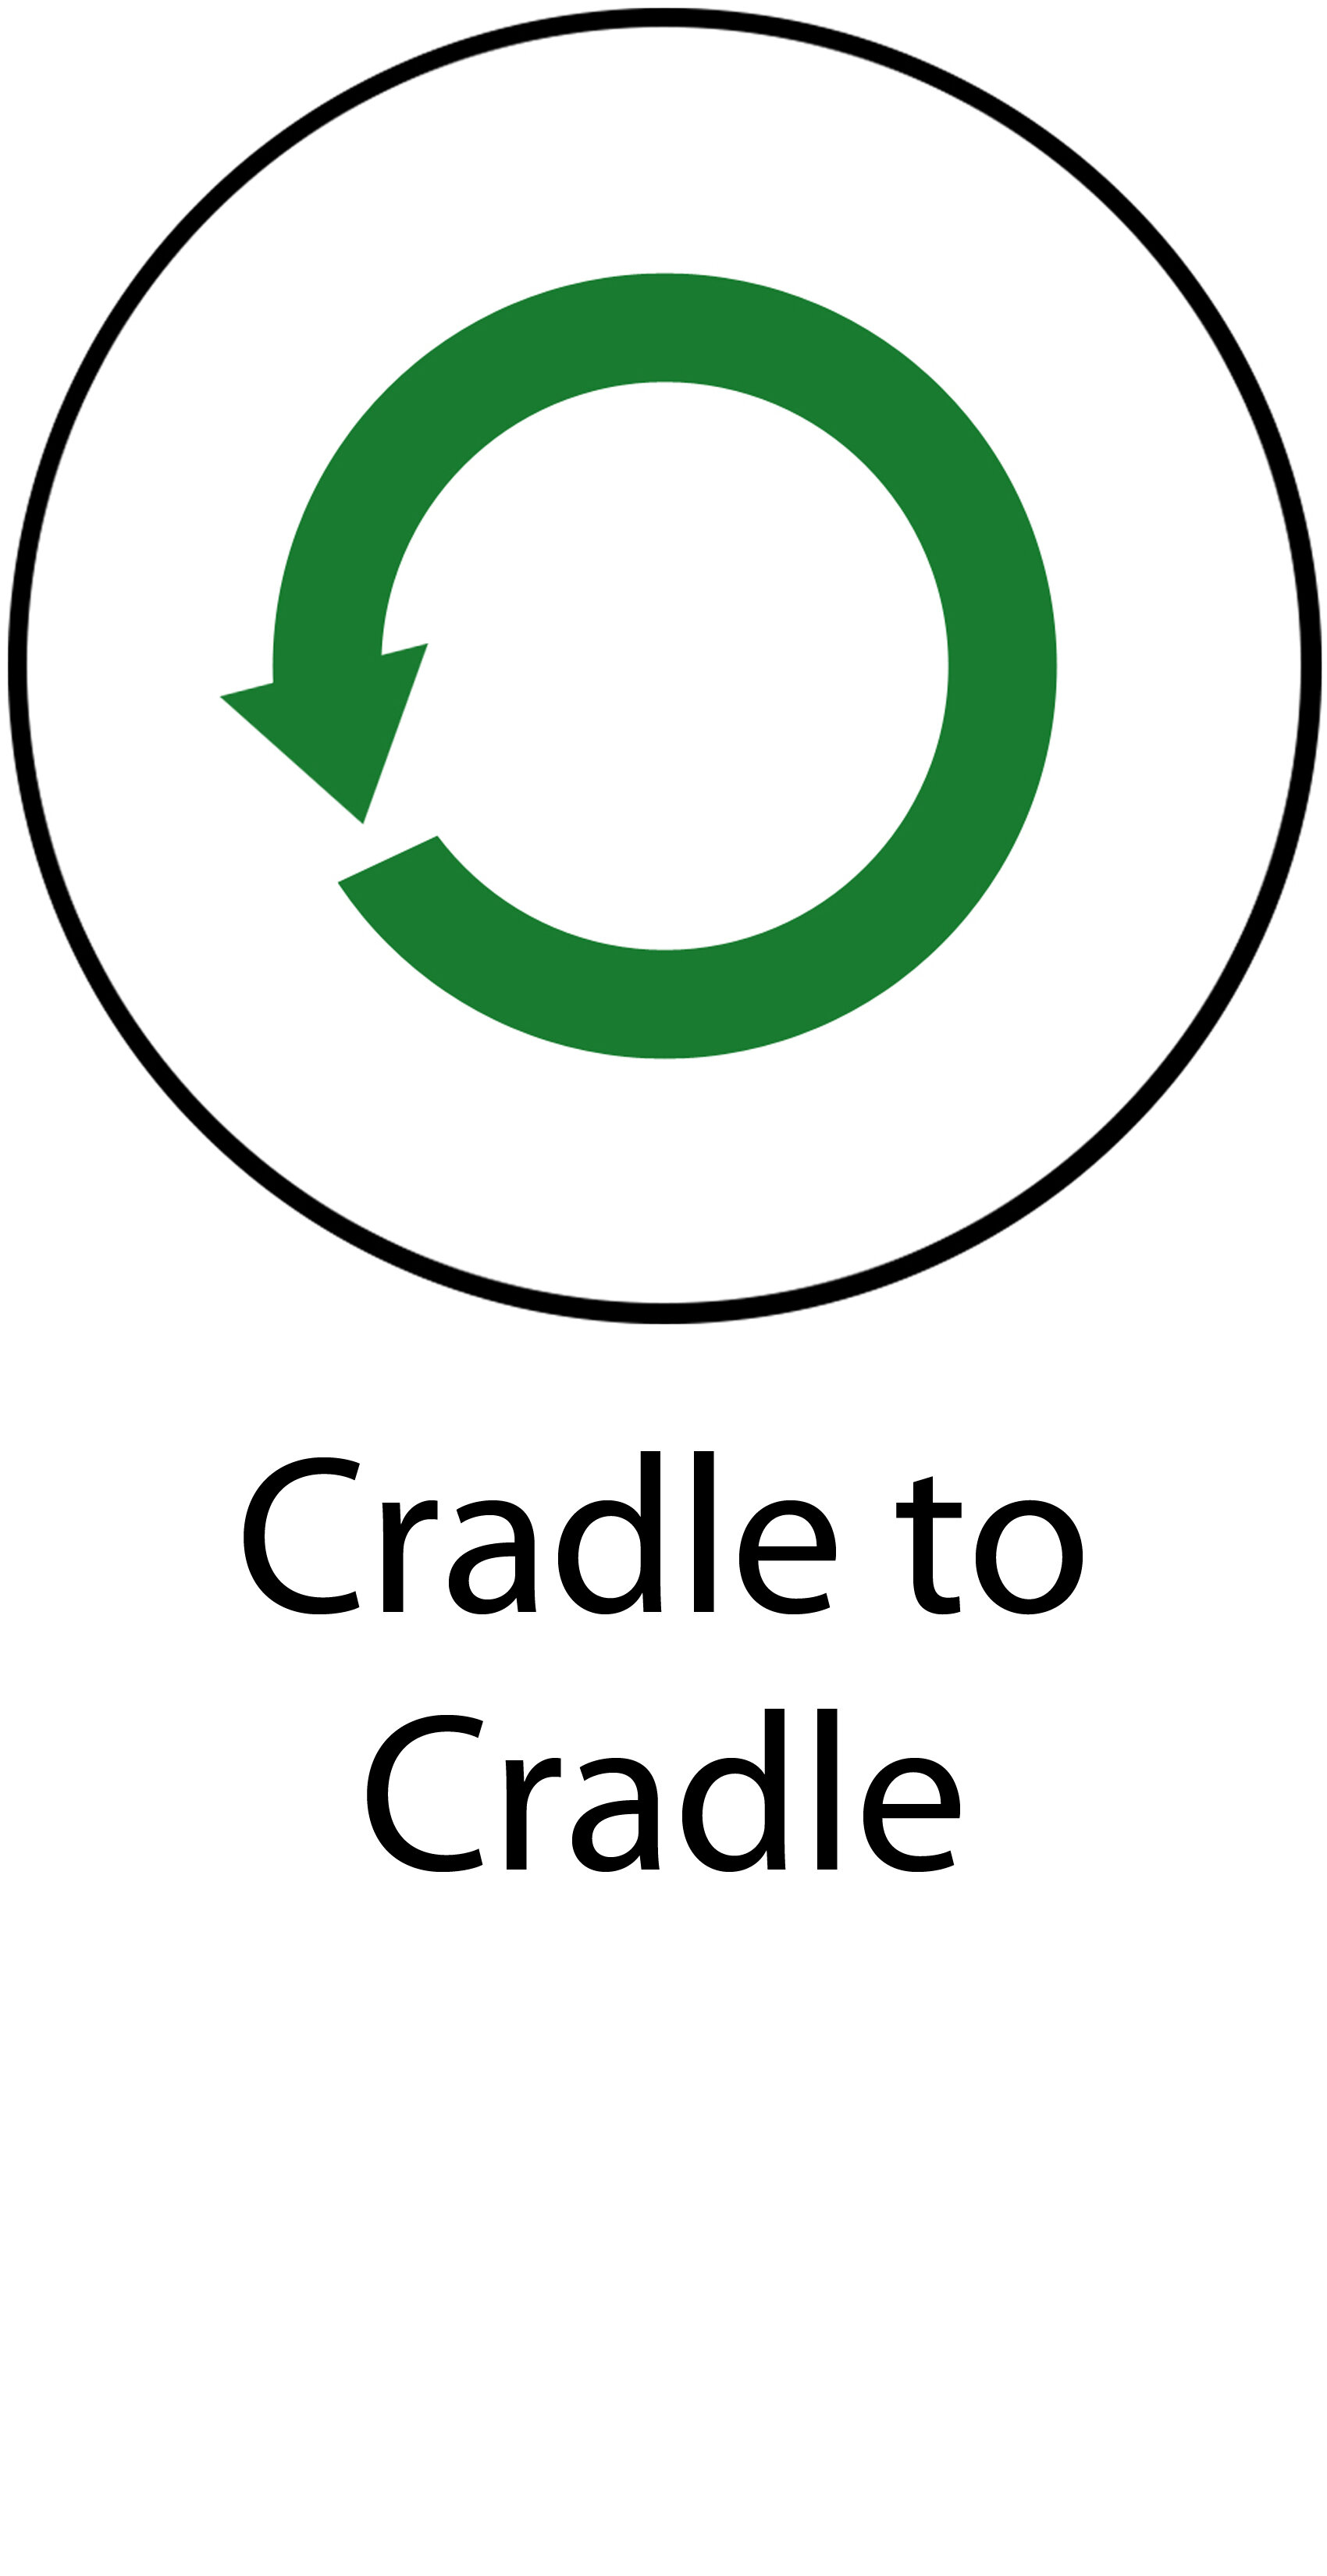 10 Cradle to Cradle.jpg